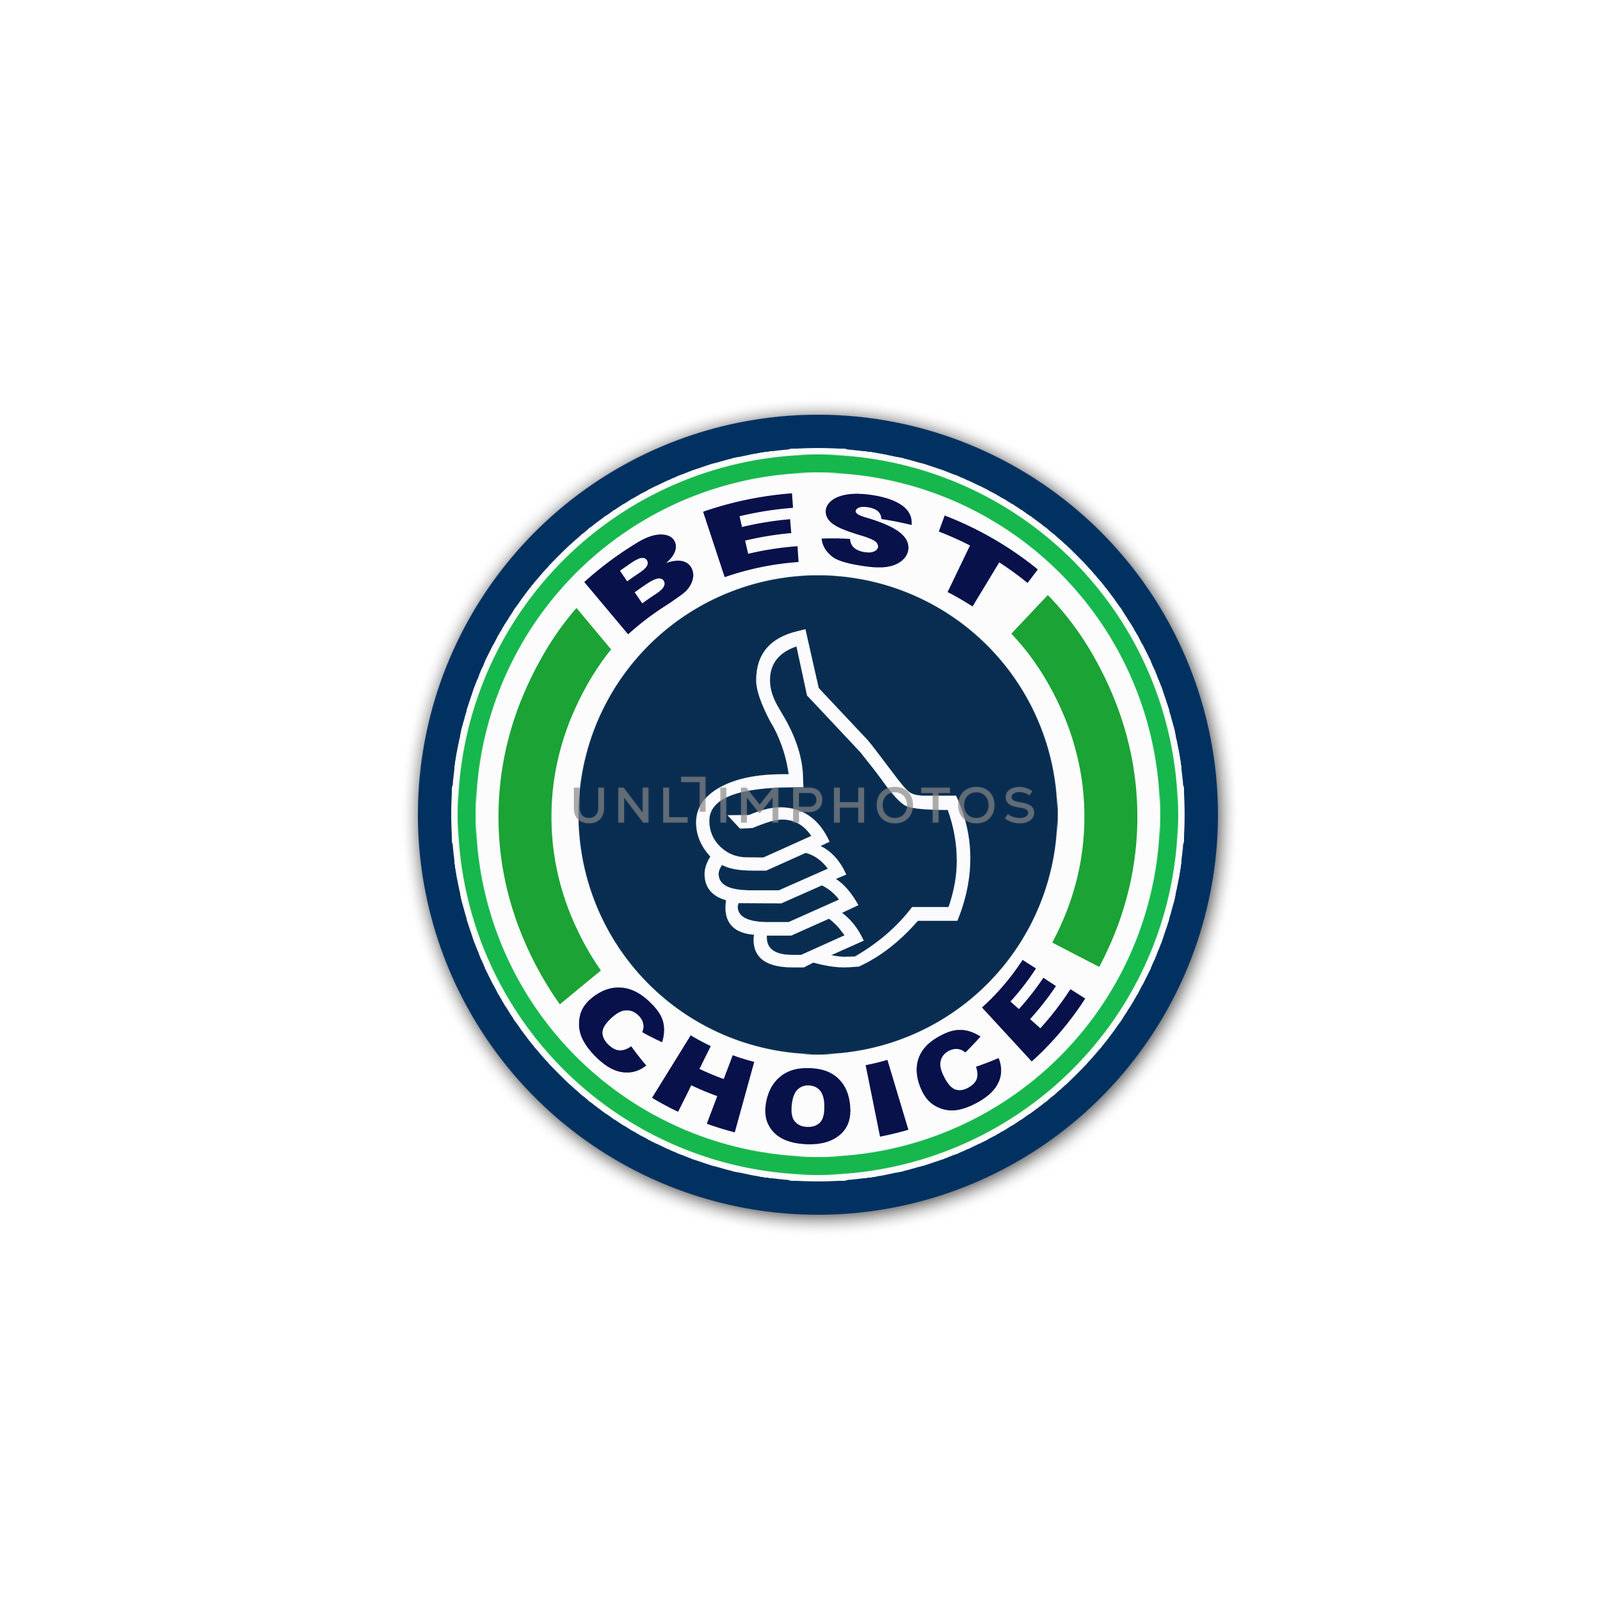 Best choice logo by shawlinmohd